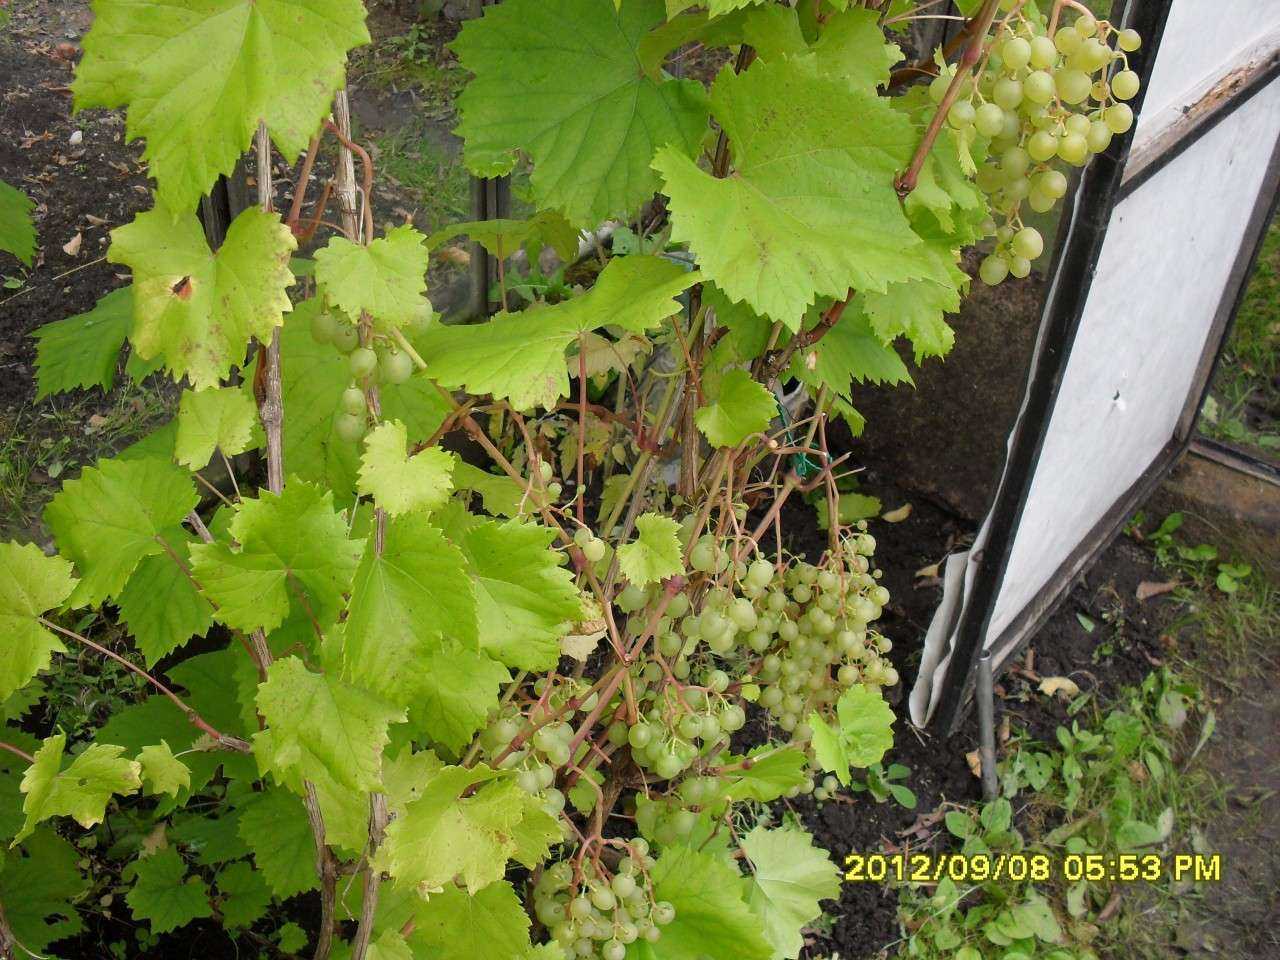 Описание сорта винограда «краса севера»: характеристики, фото, отзывы садоводов